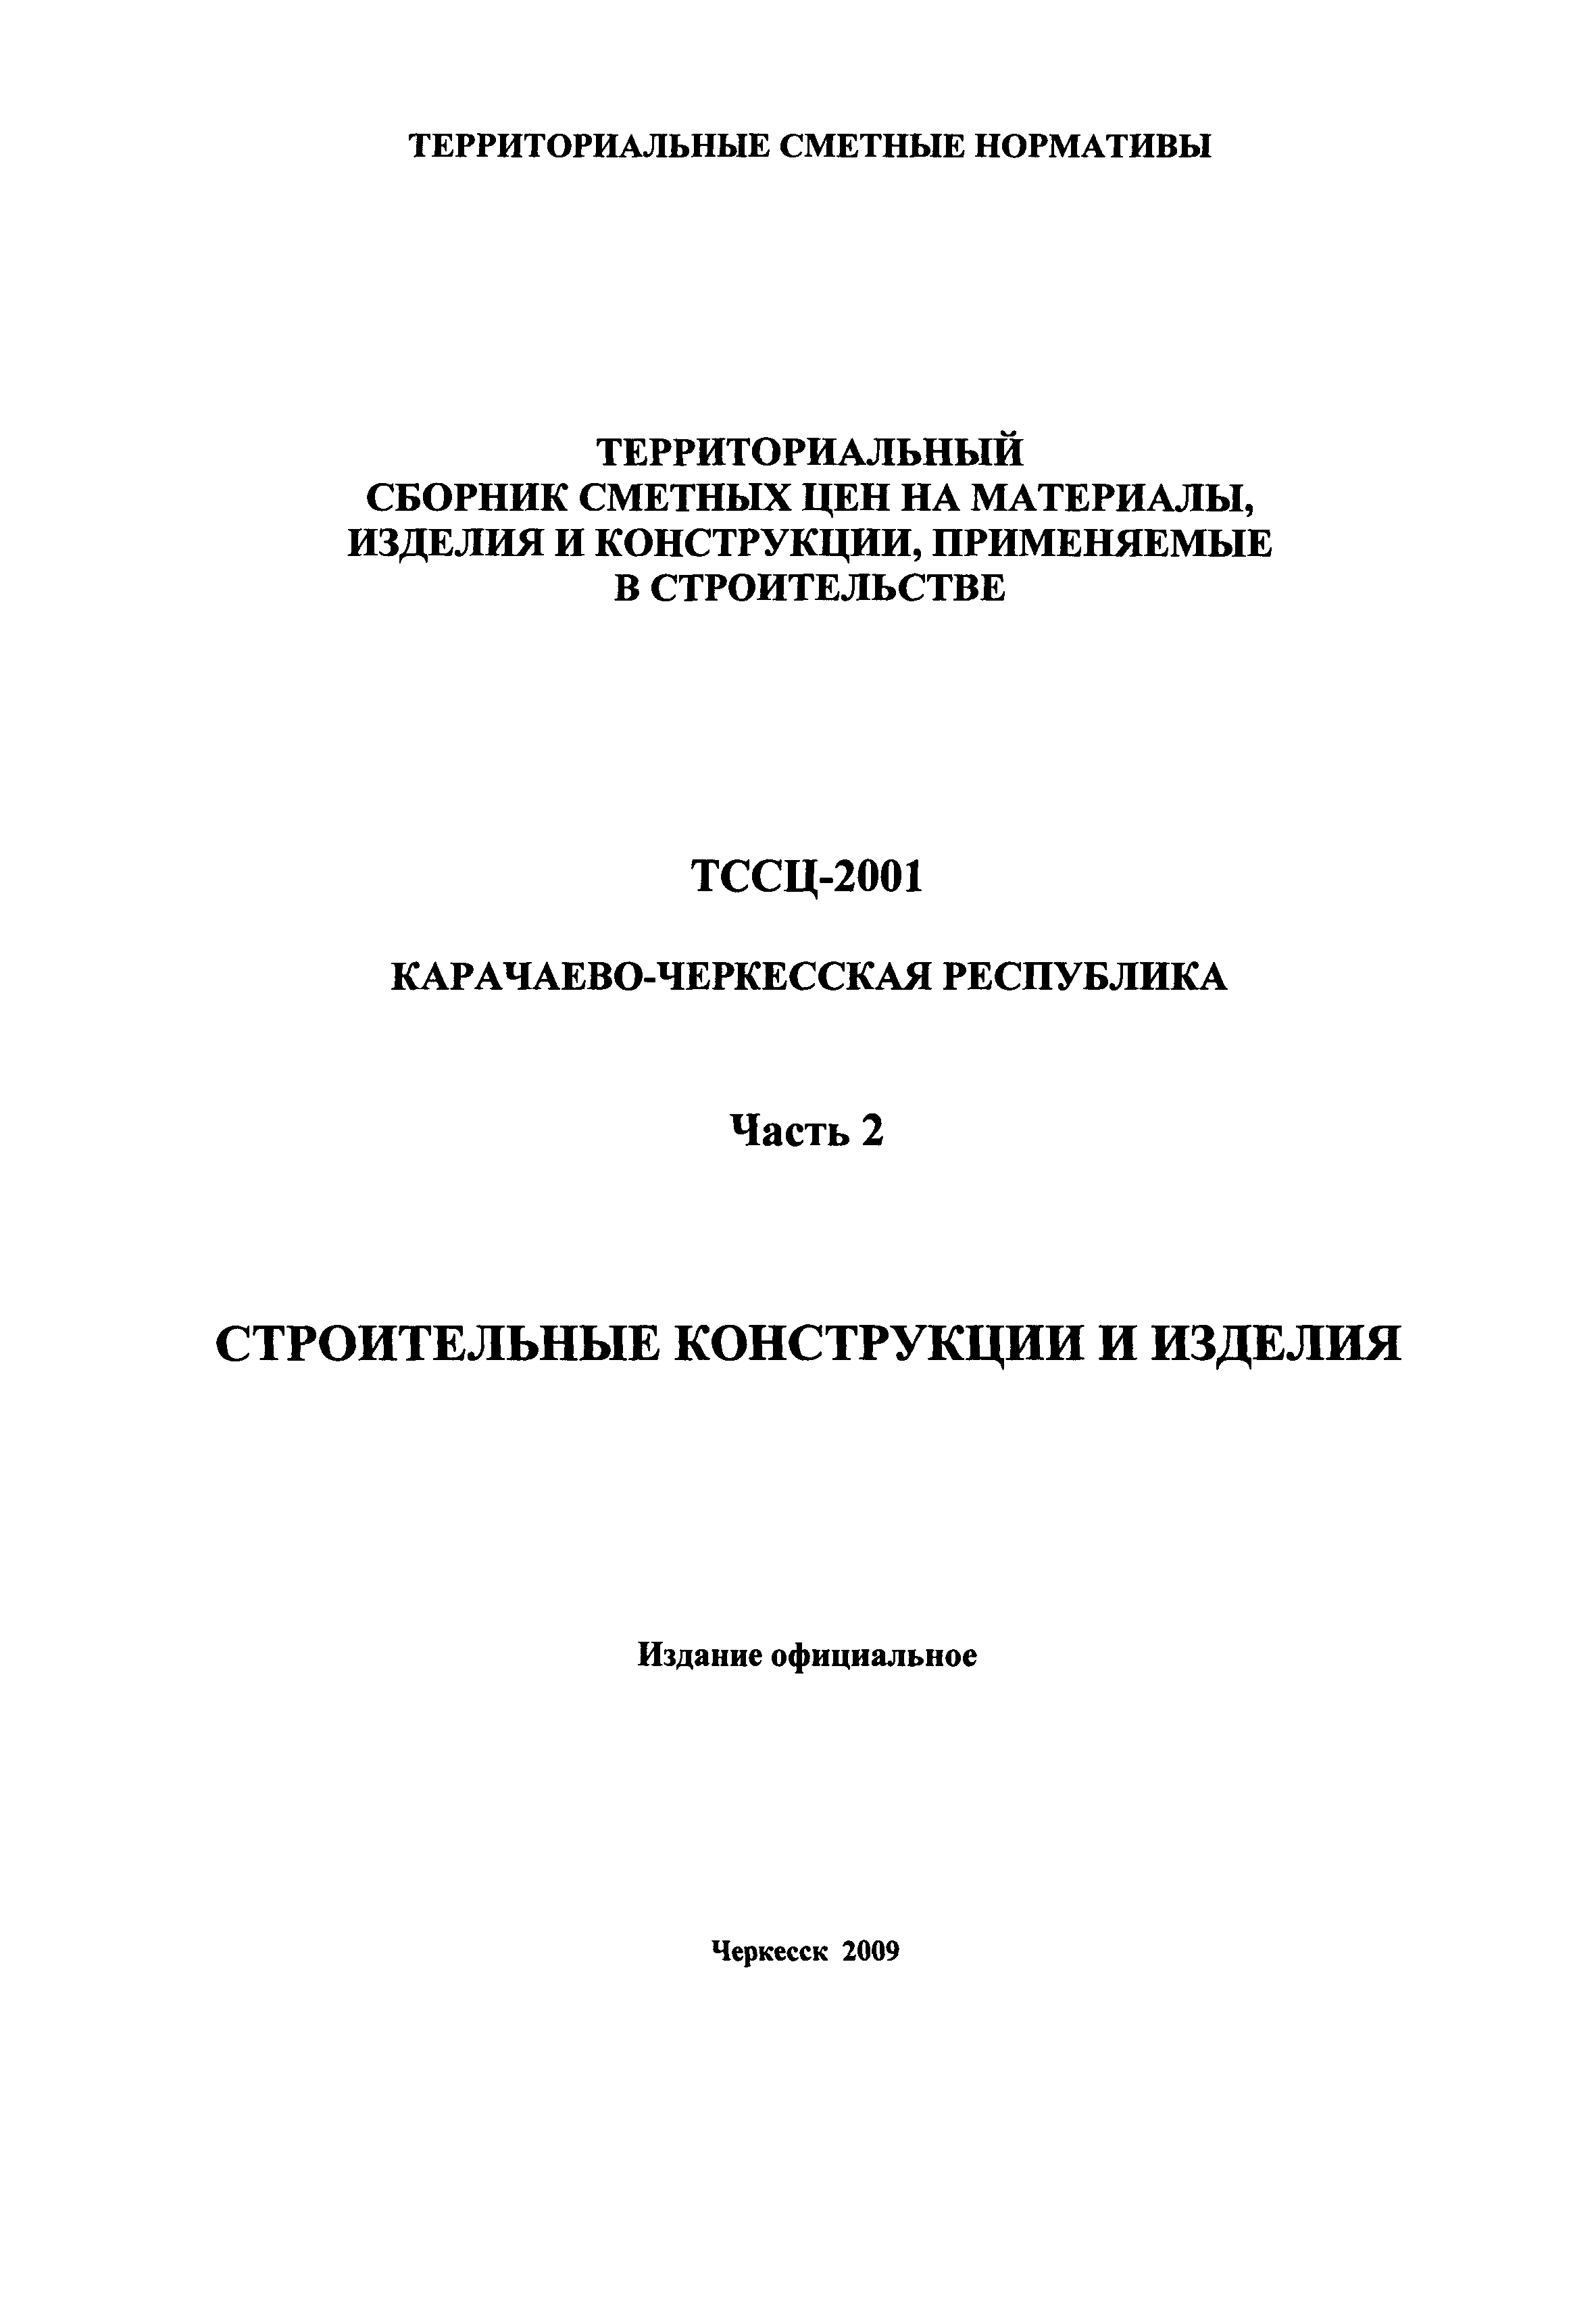 ТССЦ Карачаево-Черкесская Республика 02-2001